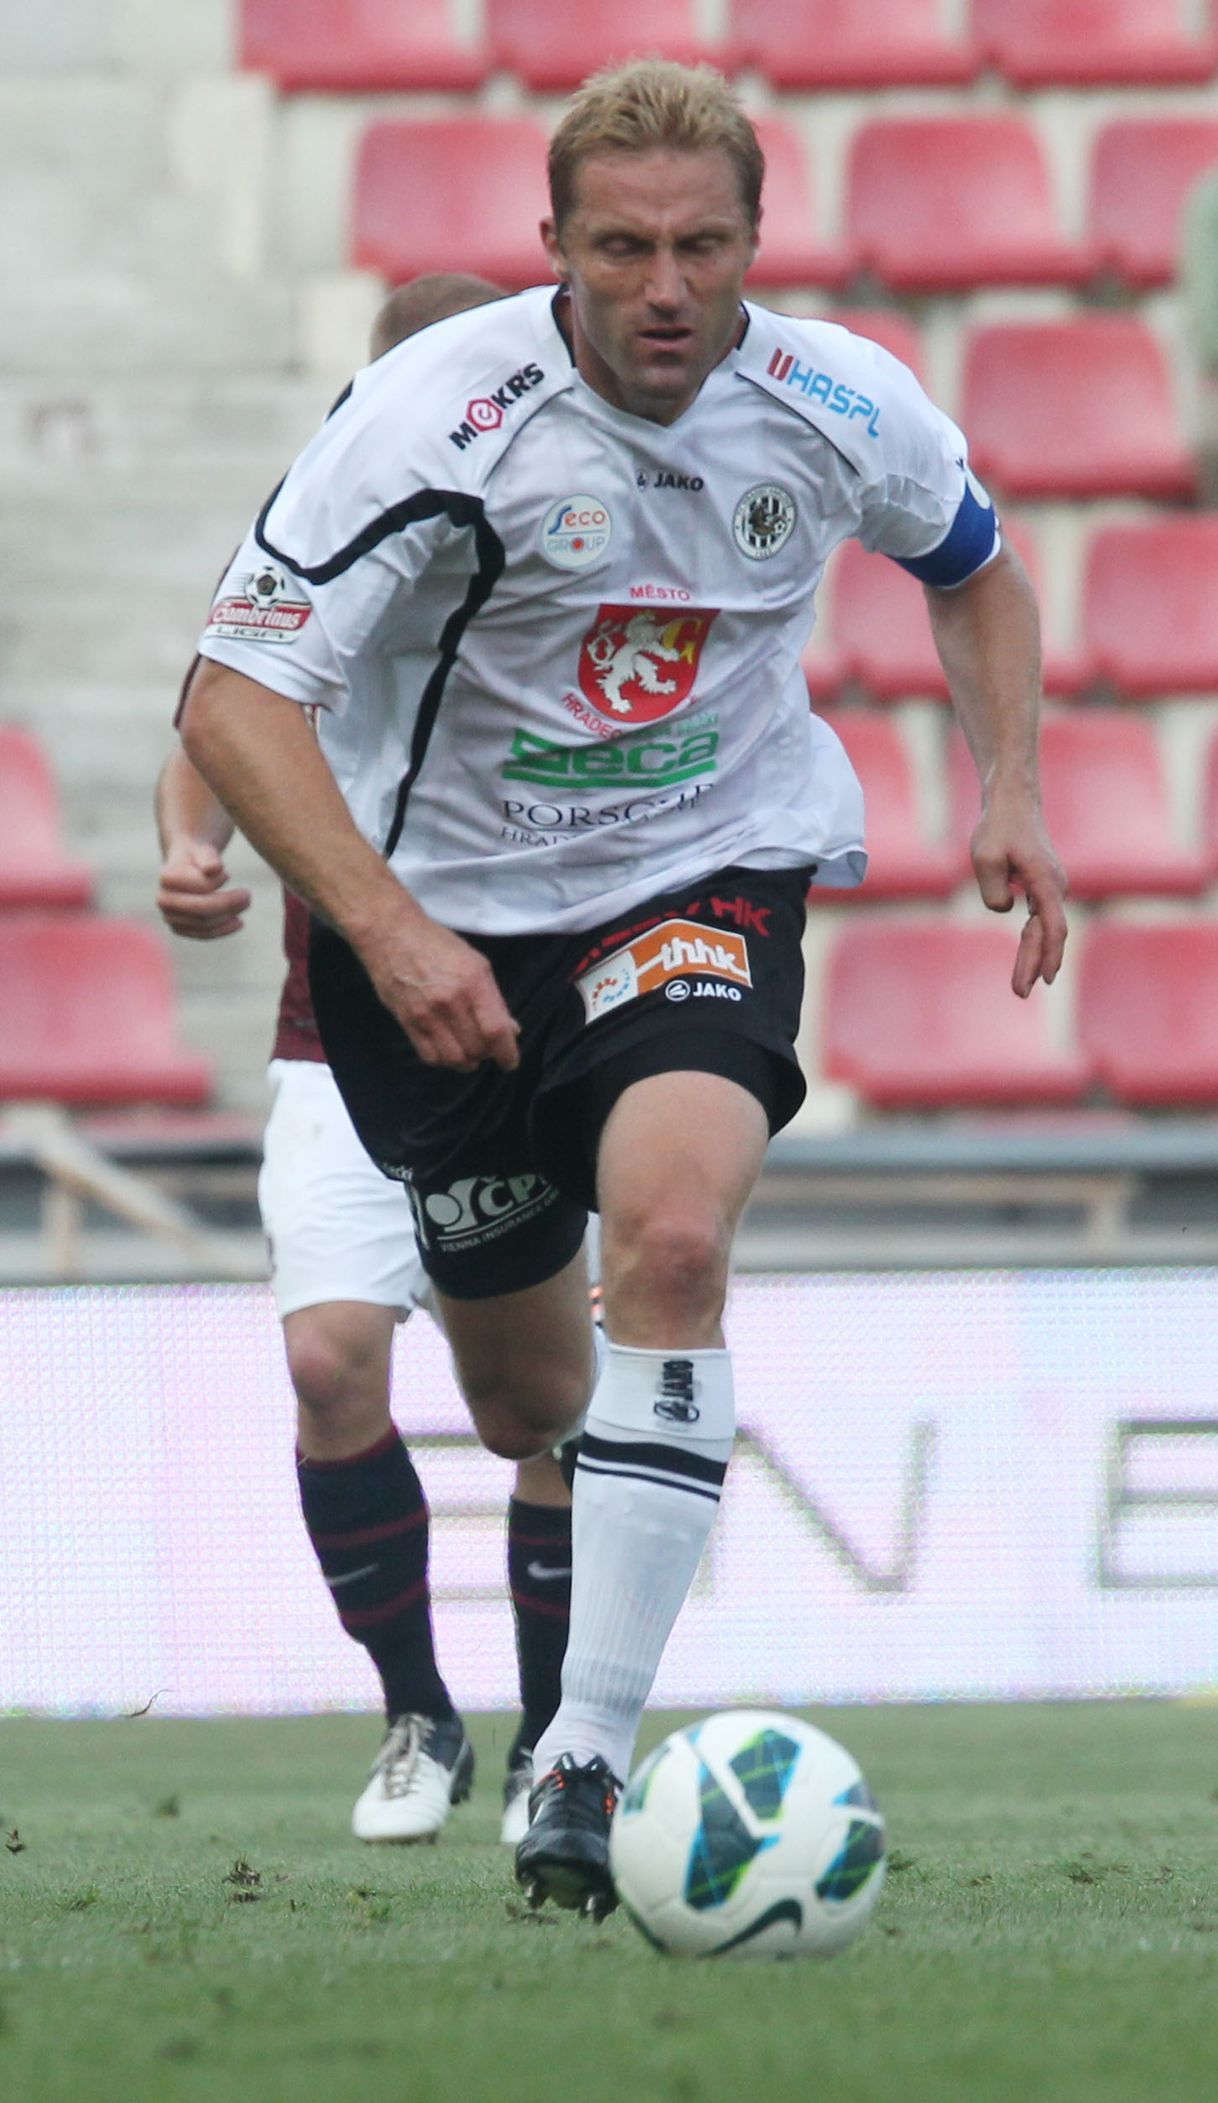 Fotbalista Milan Fukal v utkání 6. kola Gambrinus ligy 2012/13 mezi Spartou Praha a Hradcem Králové.